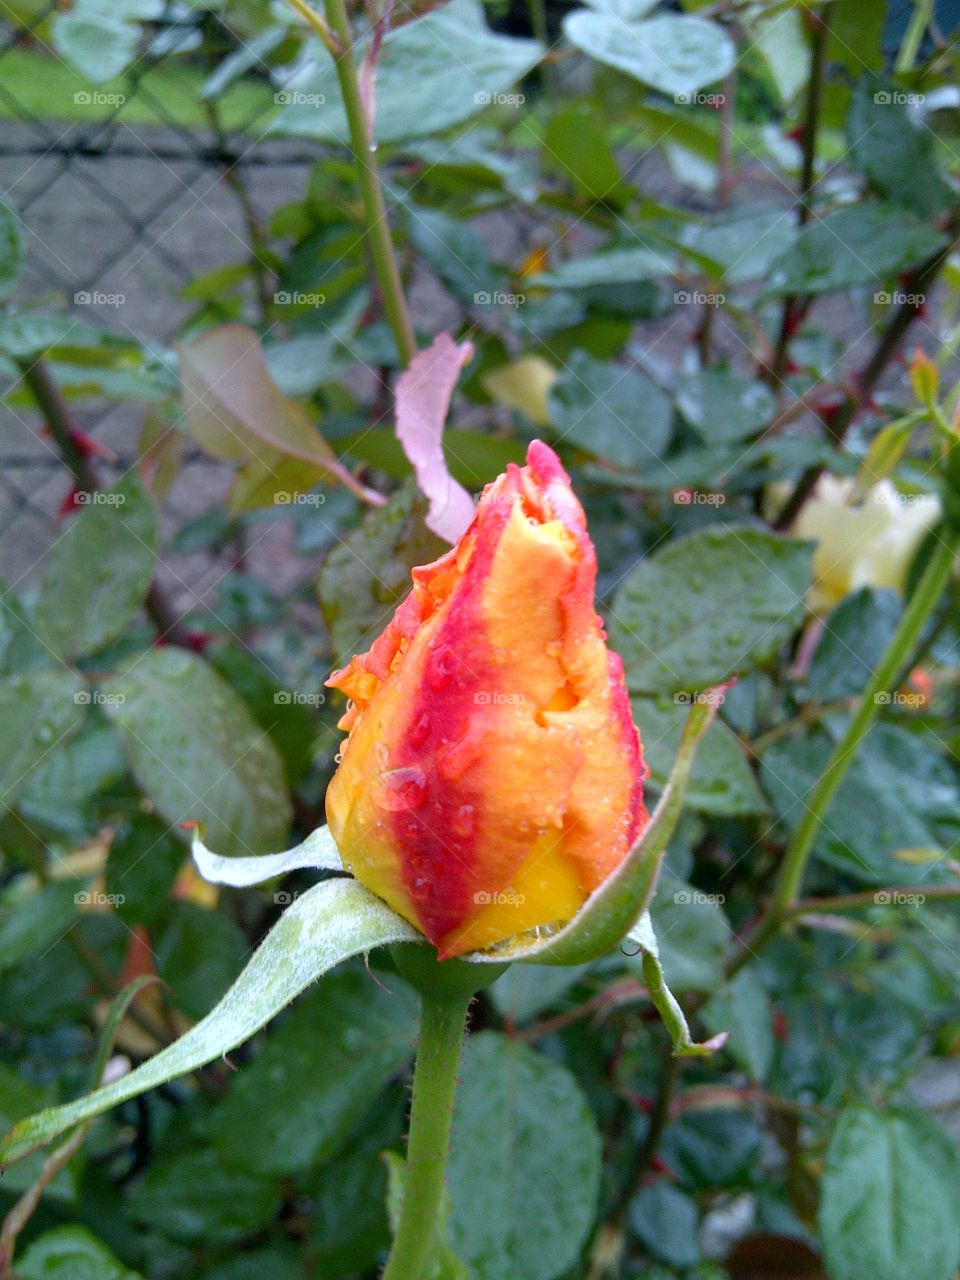 flower, rose